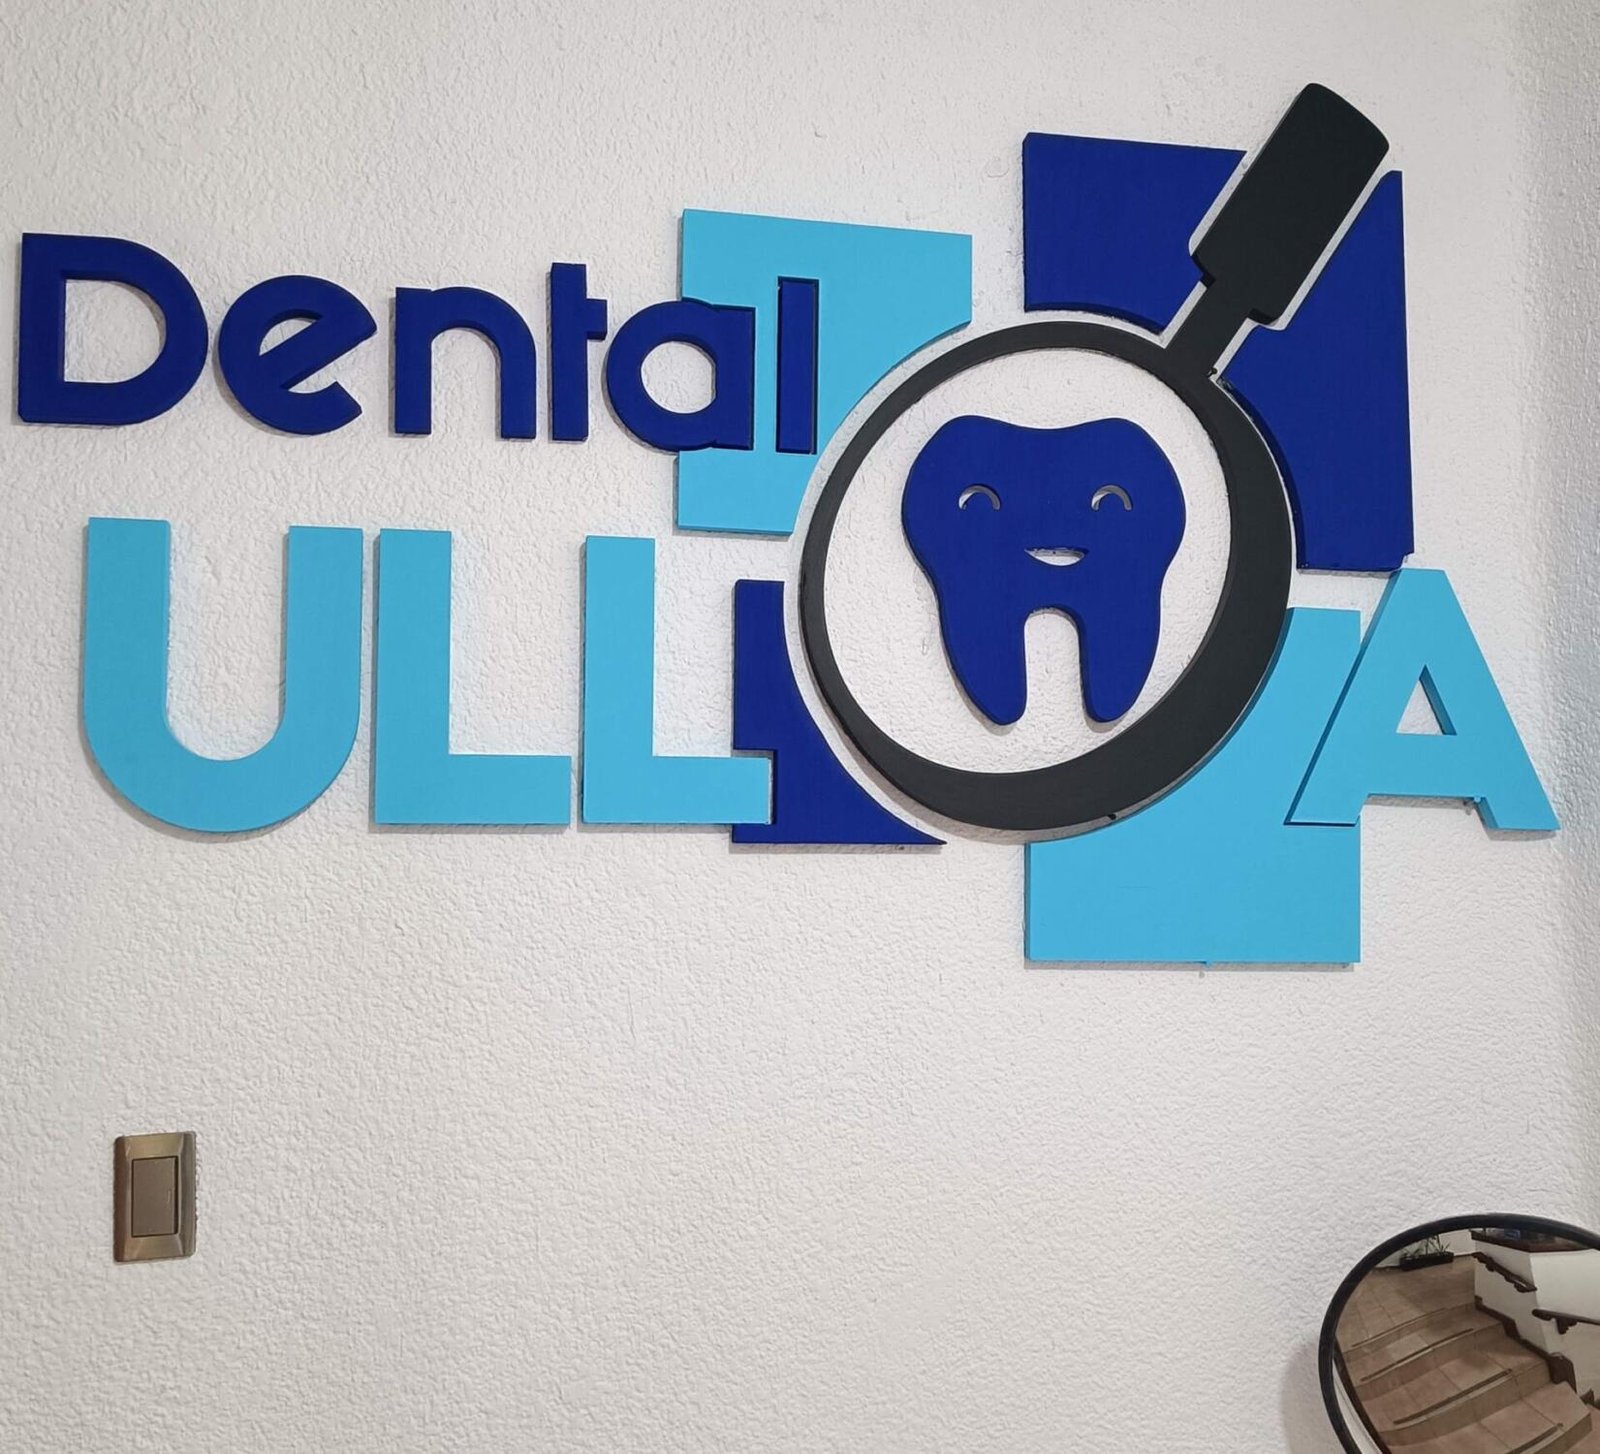 Entrada Consultorio Dental Ulloa